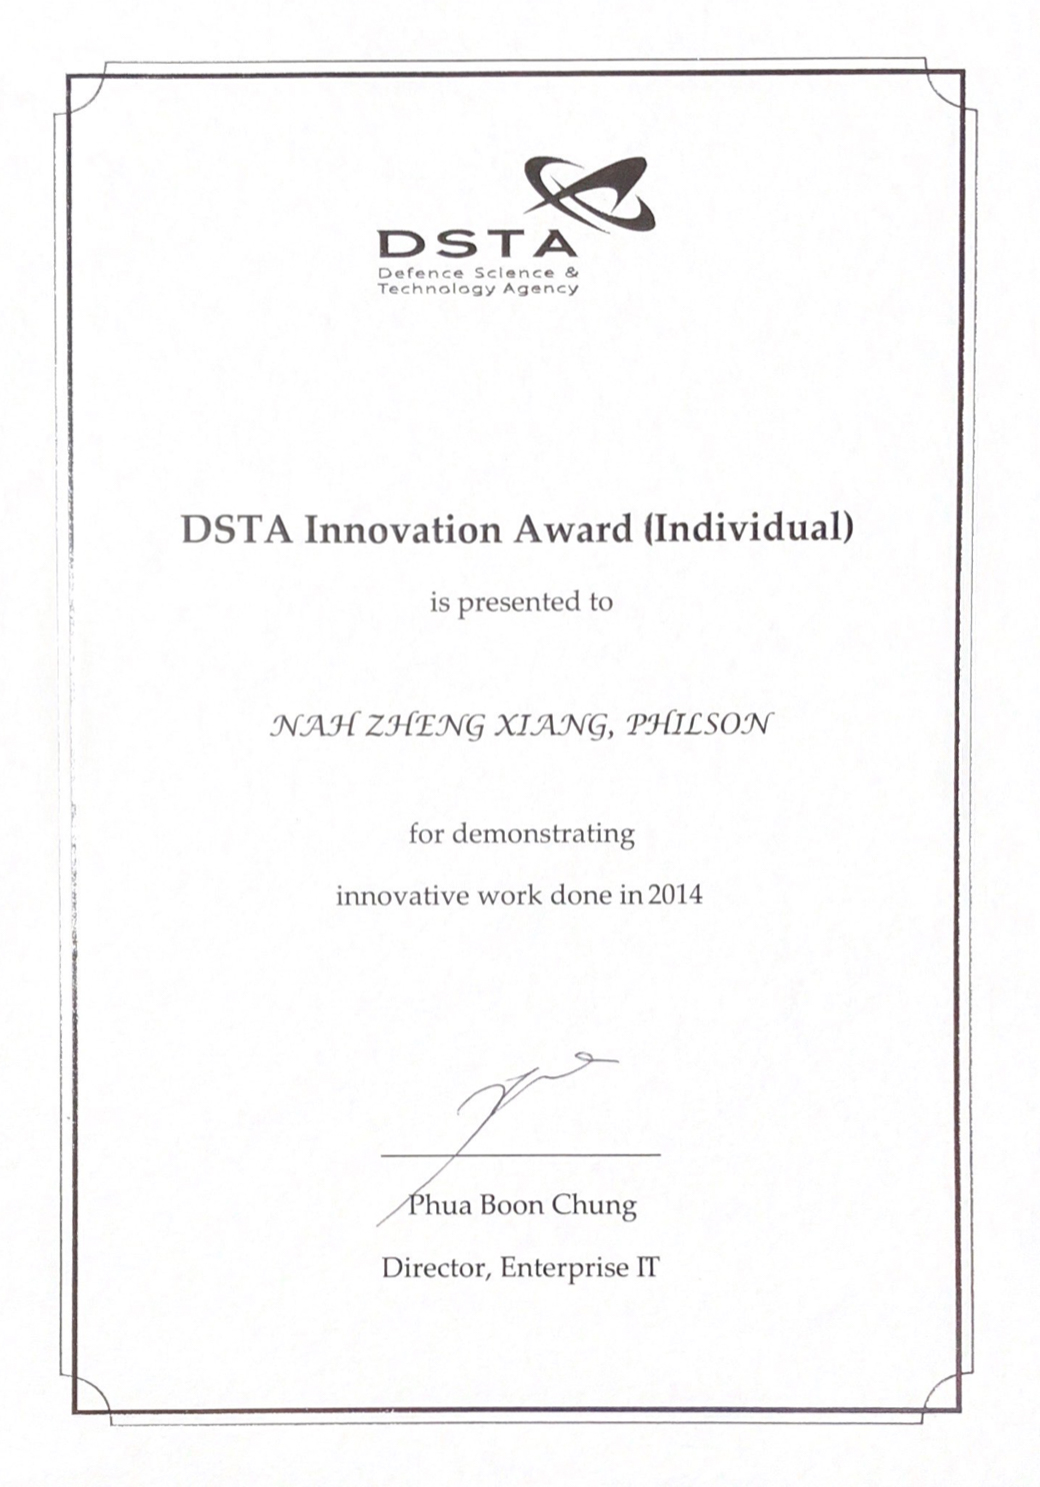 DSTA Innovation Award